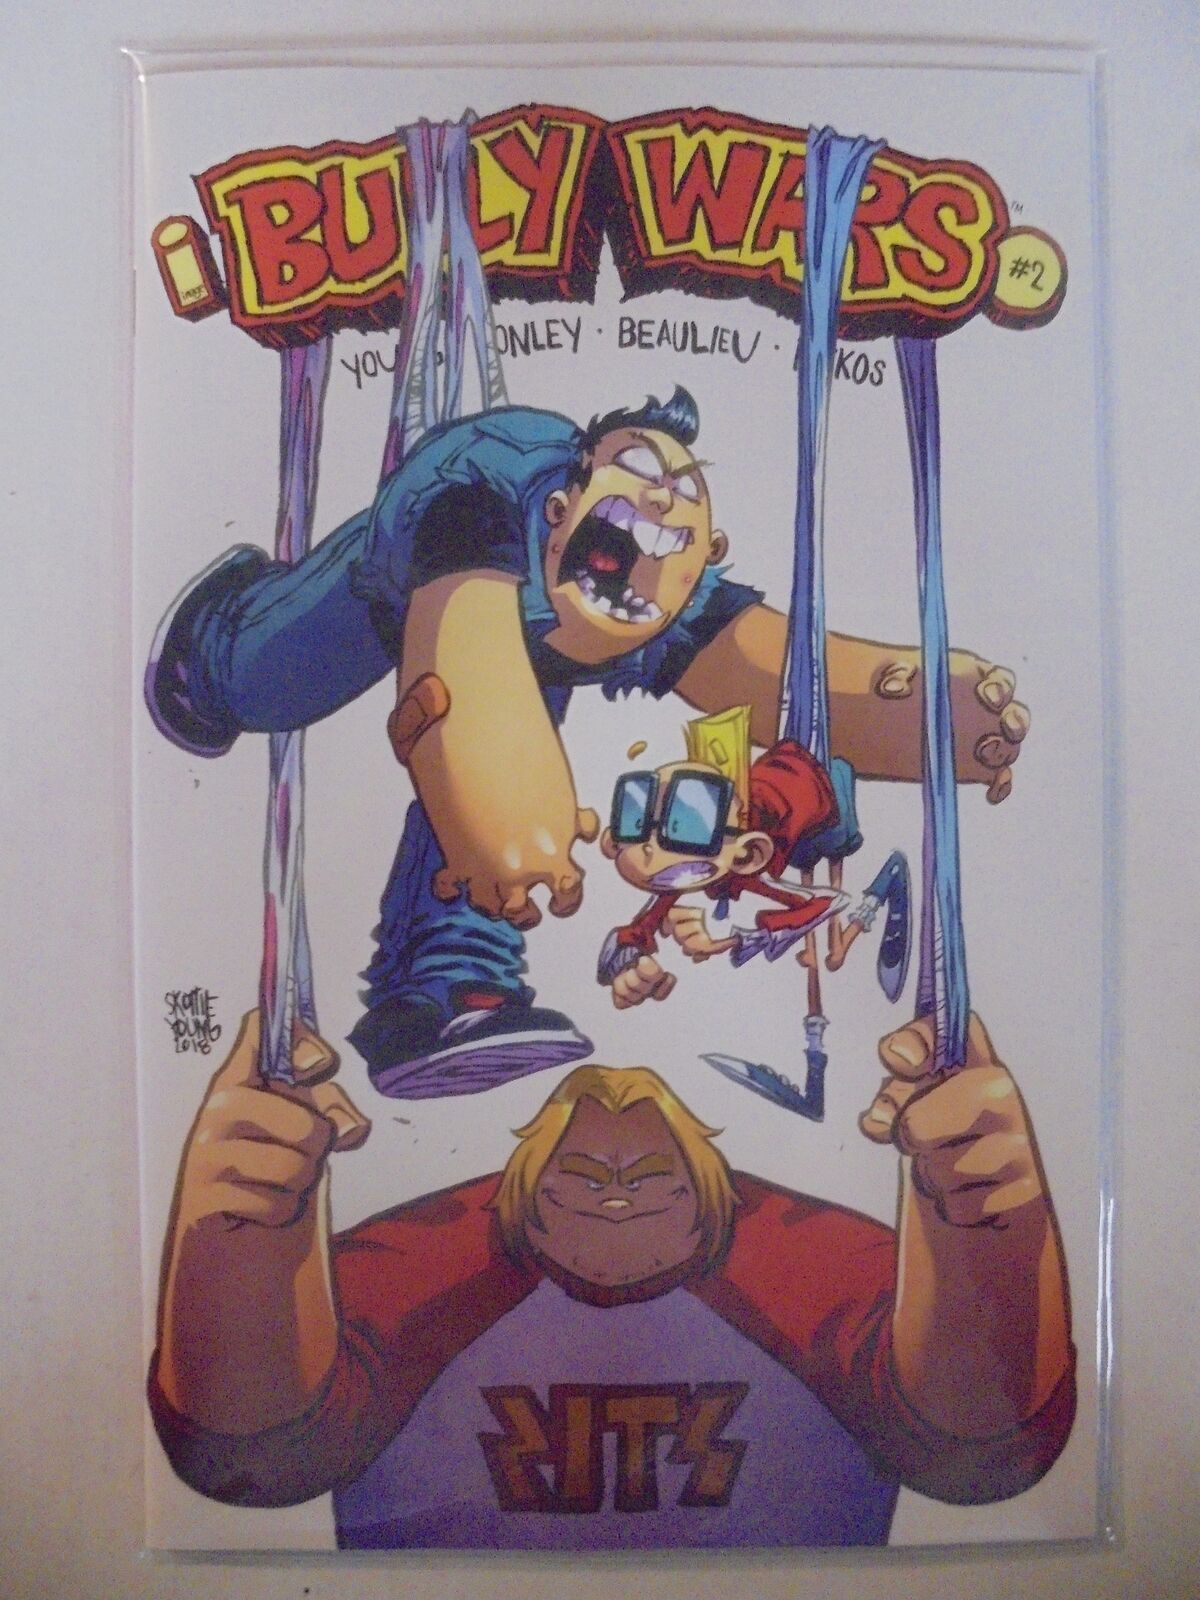 Bully Wars #2 B Cover Image NM Comics Book